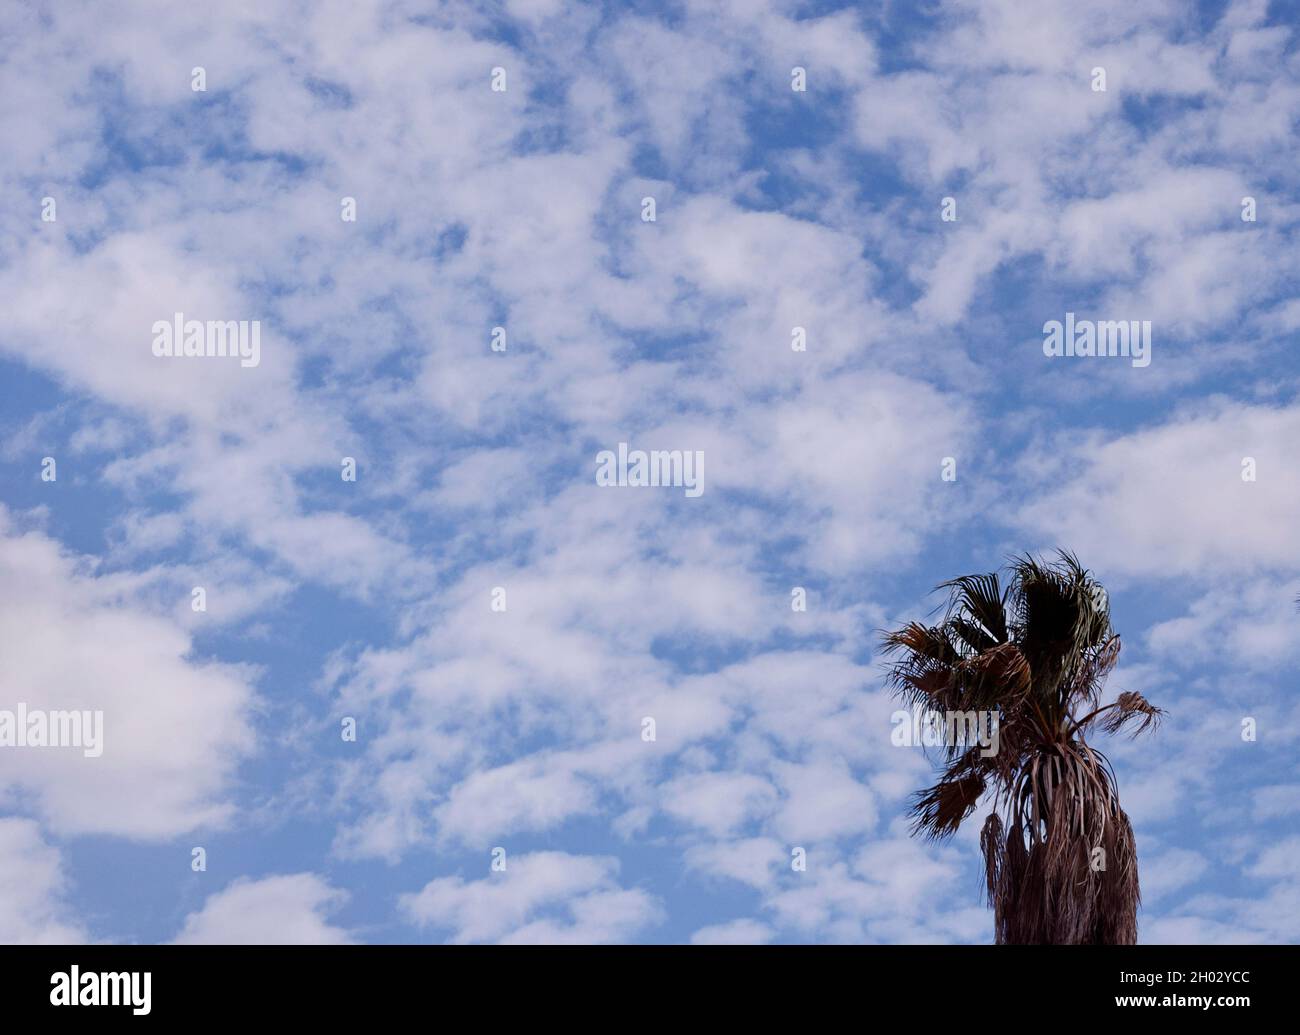 Le palmier californien est taillé dans un ciel bleu de rêve avec des nuages de boule de coton de guimauve dispersés par temps venteux Banque D'Images